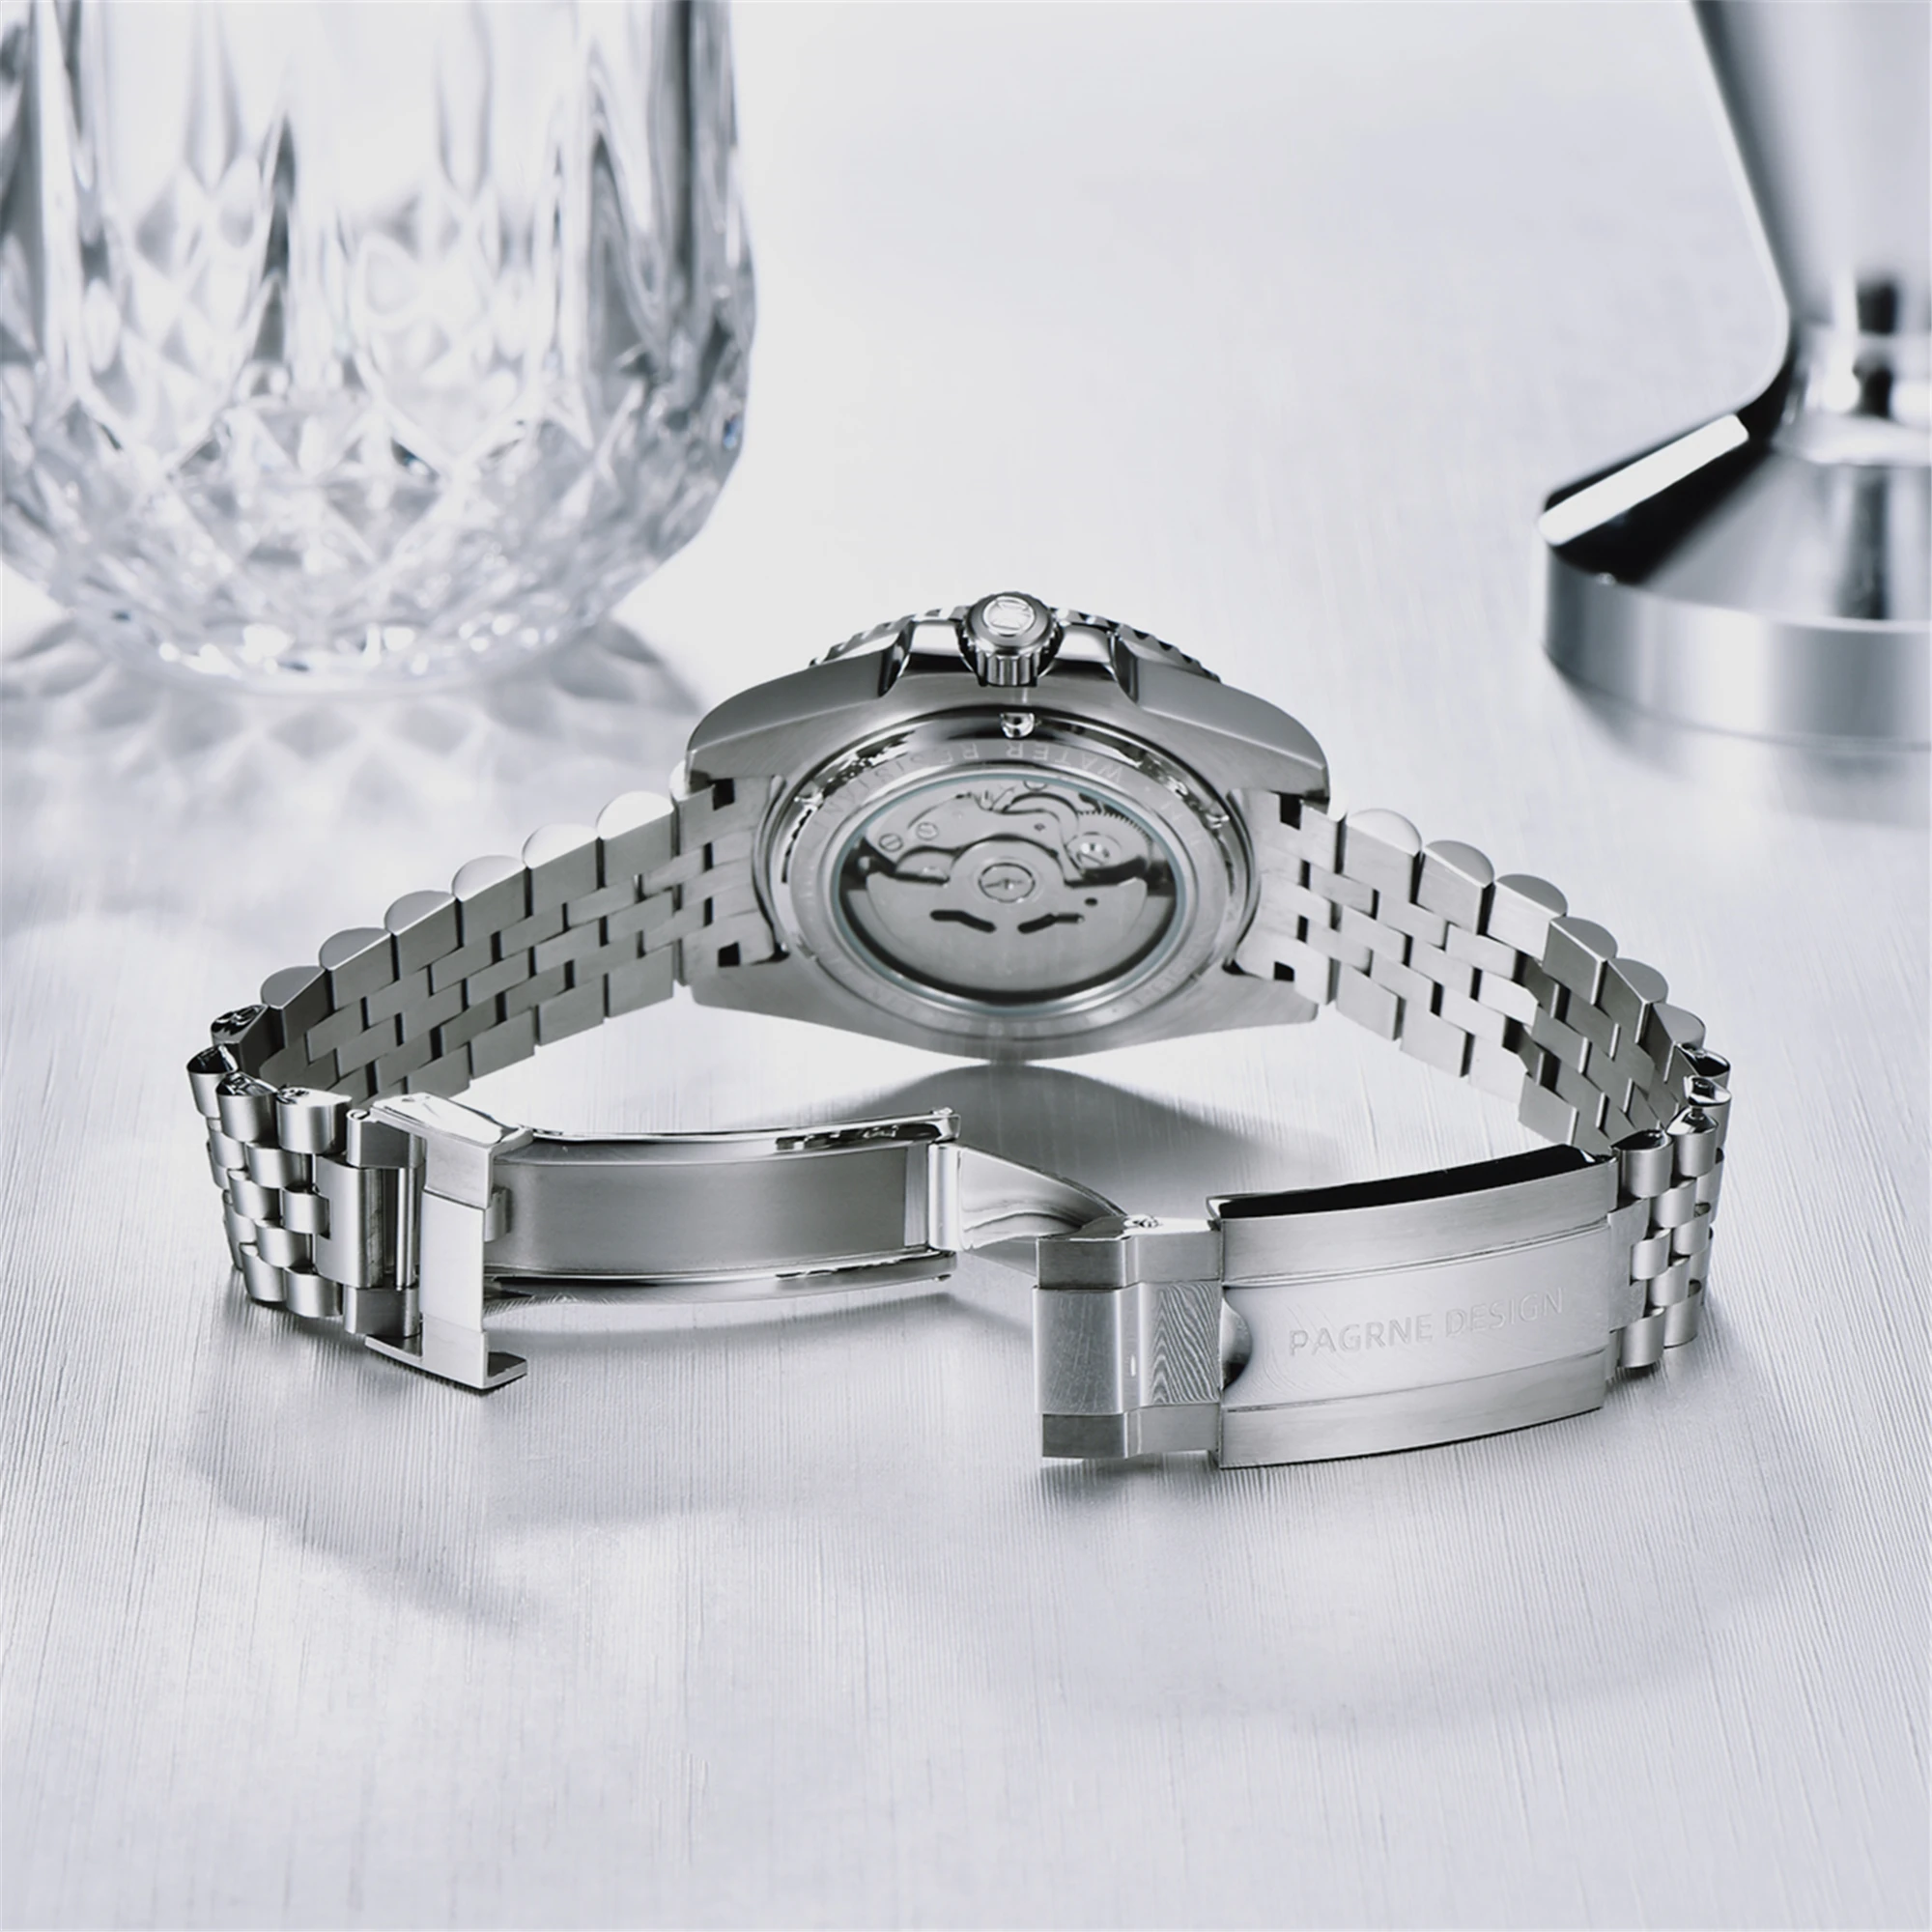 2021 PAGREN PAGANI Design Новые мужские механические часы с сапфировым стеклом 100 м